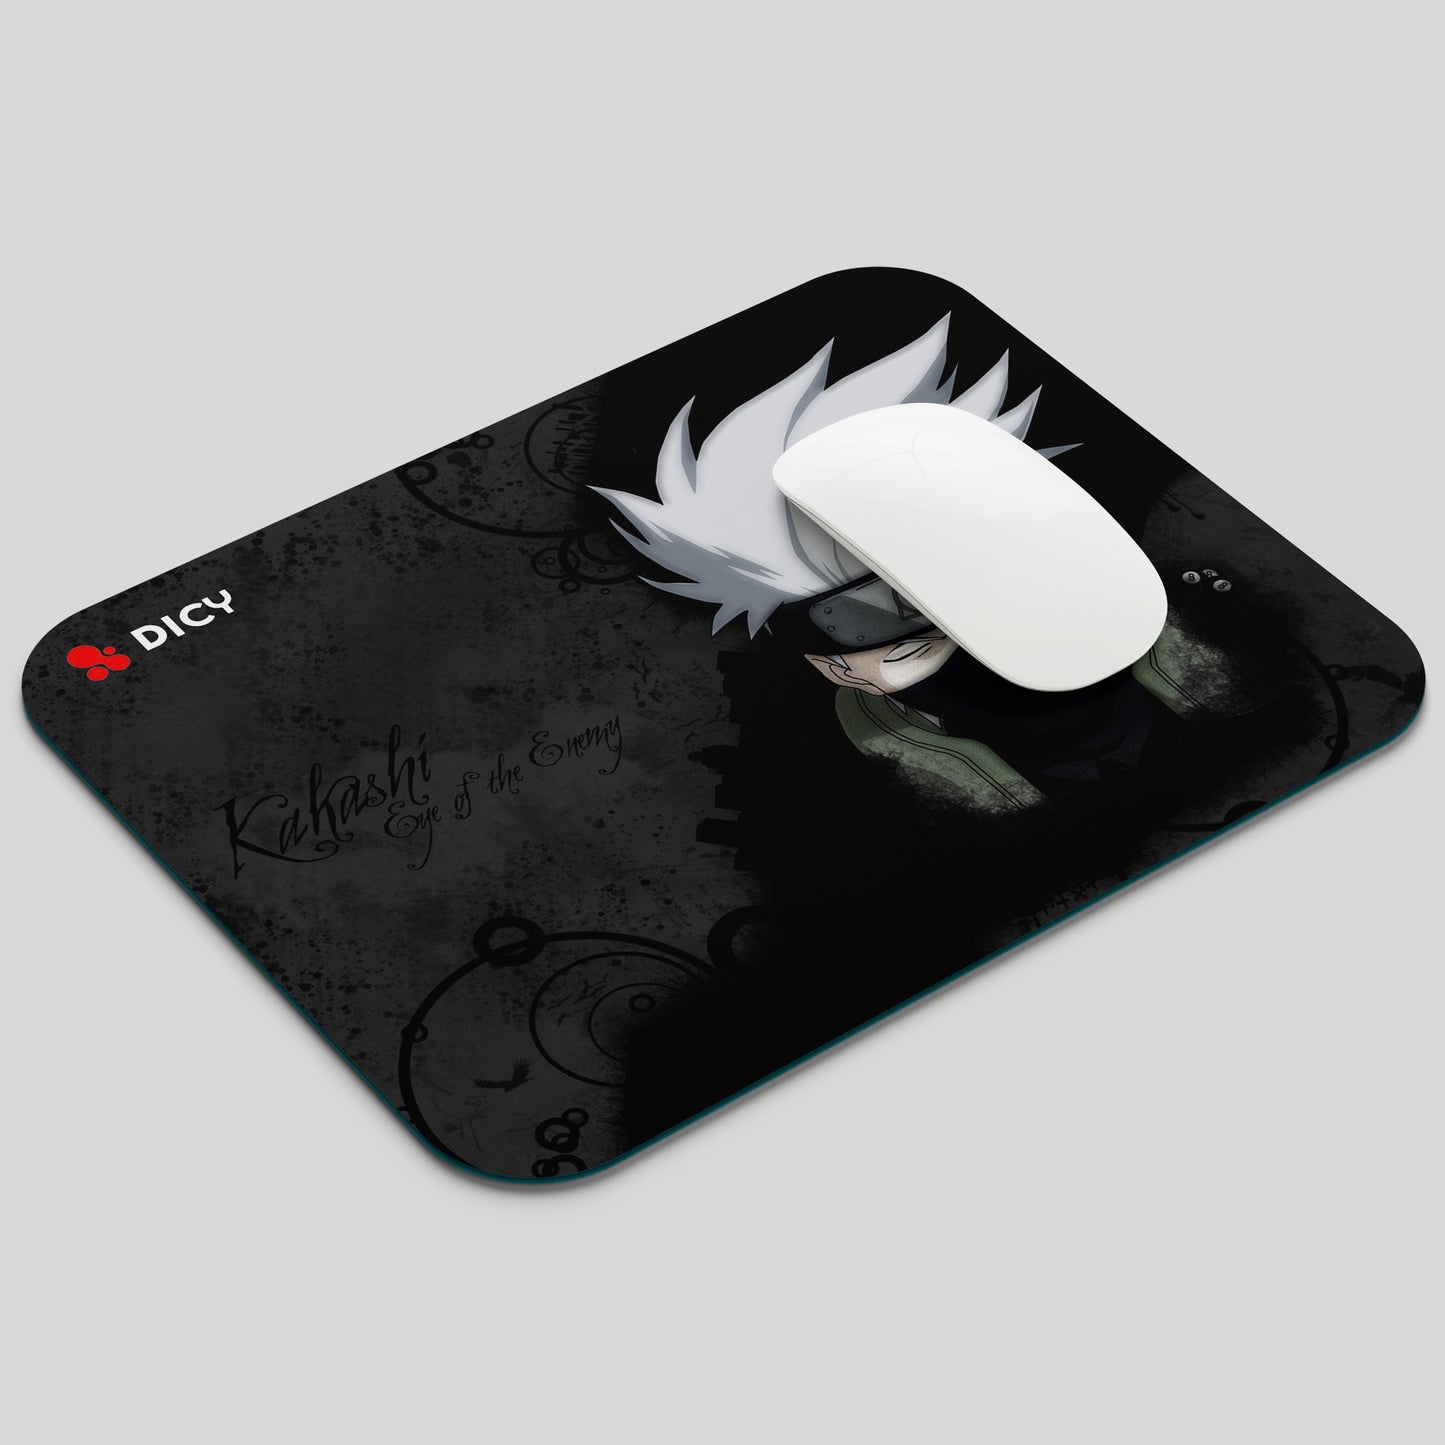 Mouse Pad for Gaming PC Laptop Desktop | Kakashi Hatake